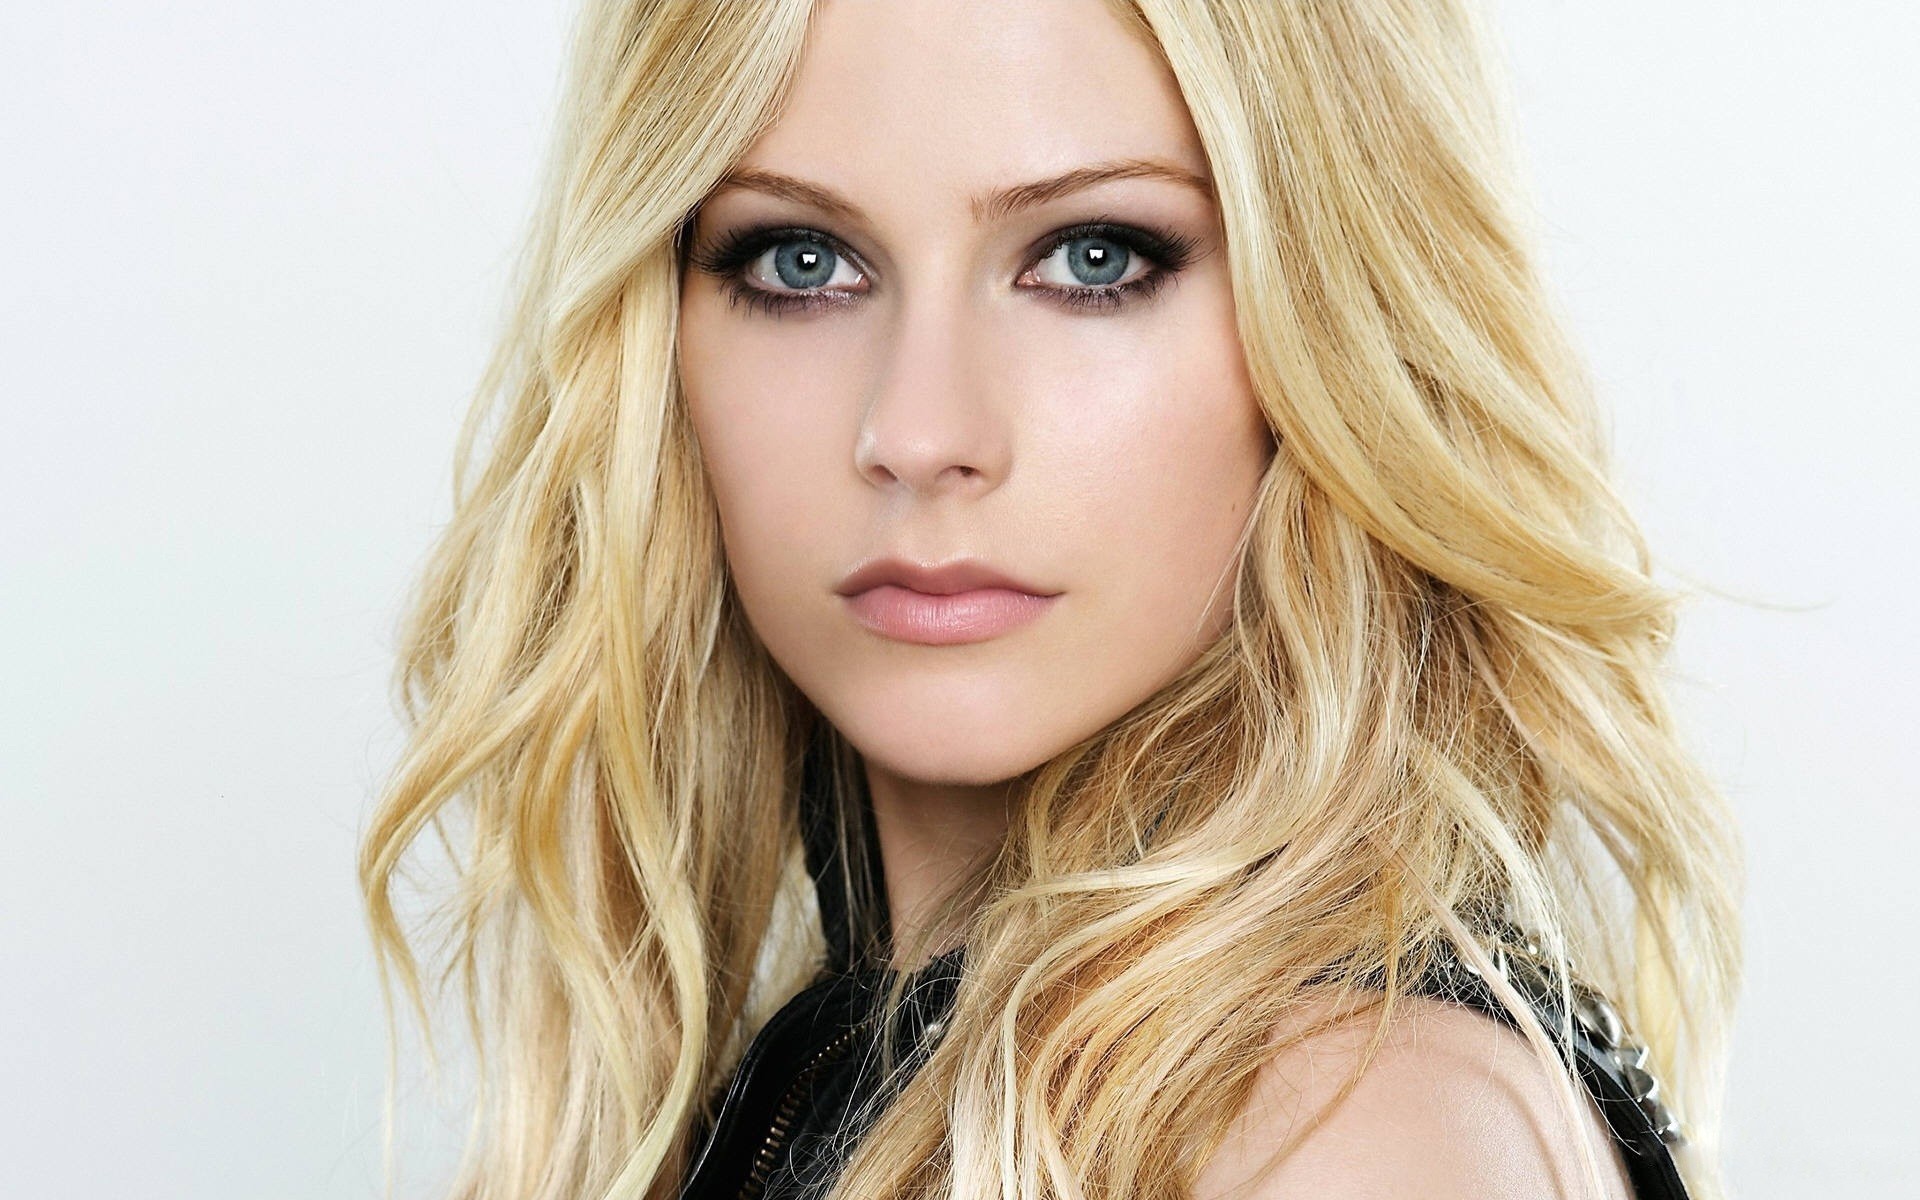 blondes, women, Avril Lavigne, singers, faces - desktop wallpaper